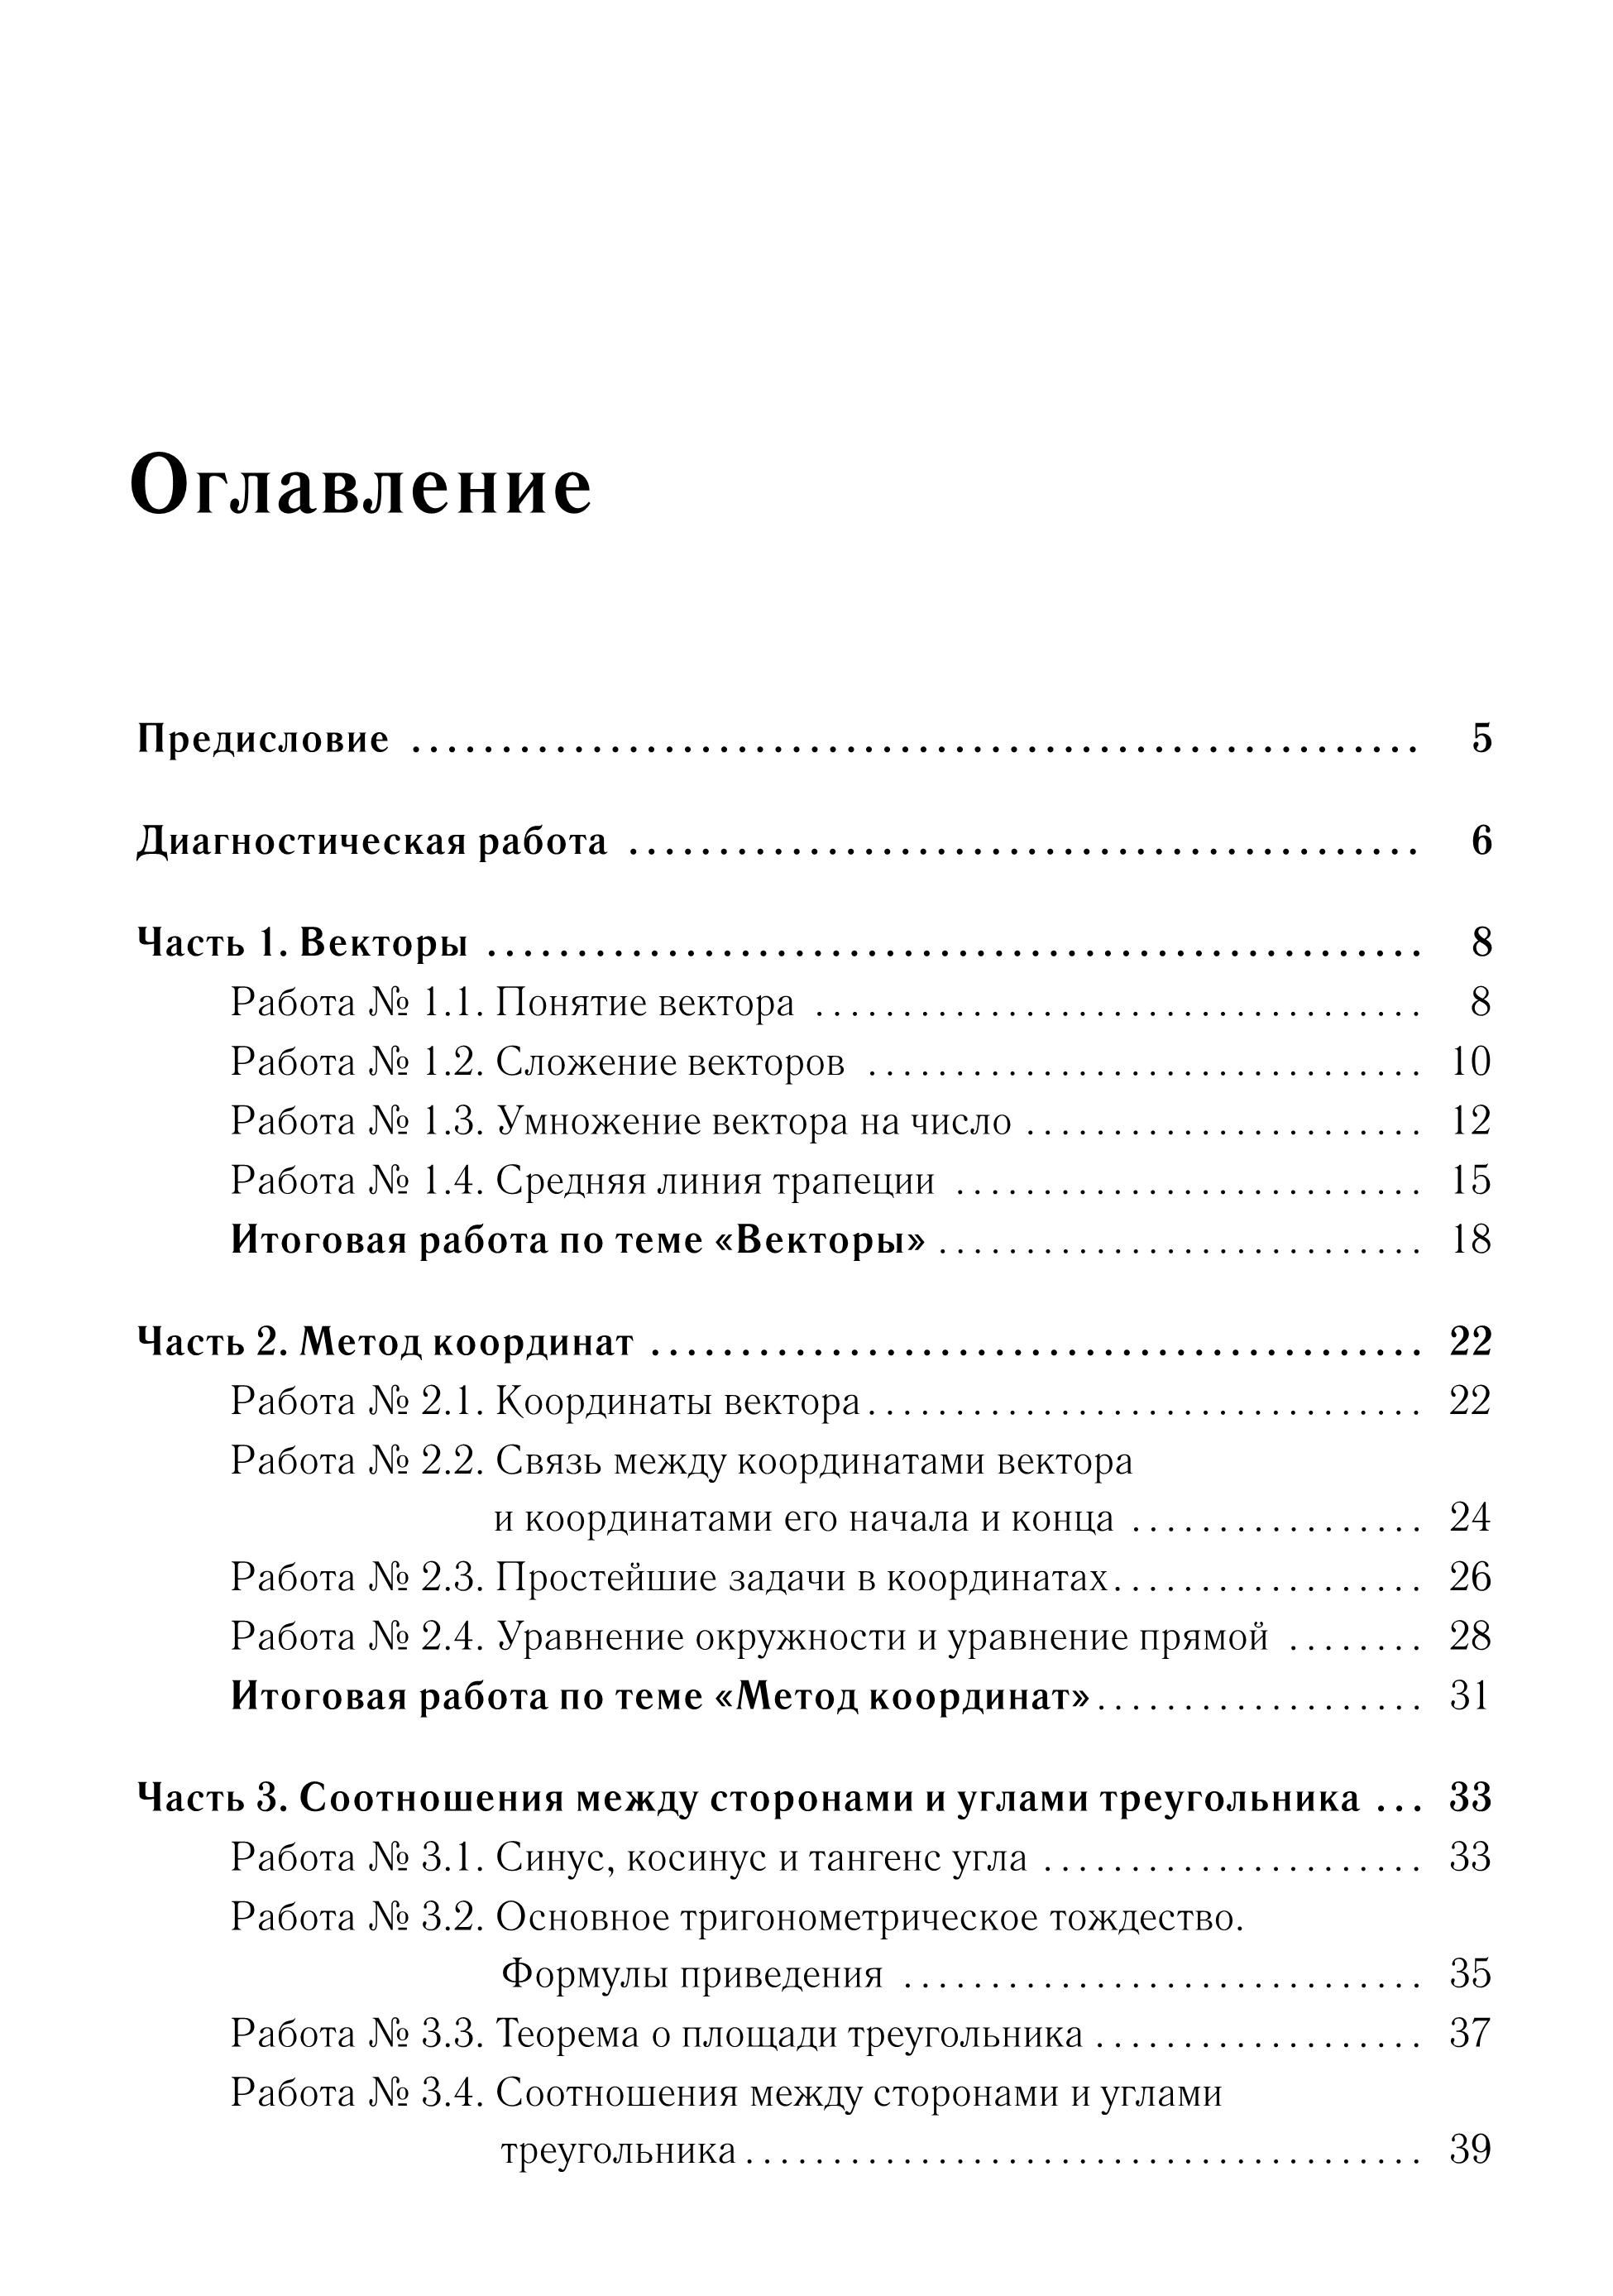 Геометрия. 9 кл. Тетрадь для тренировки и мониторинга. 4-е изд.